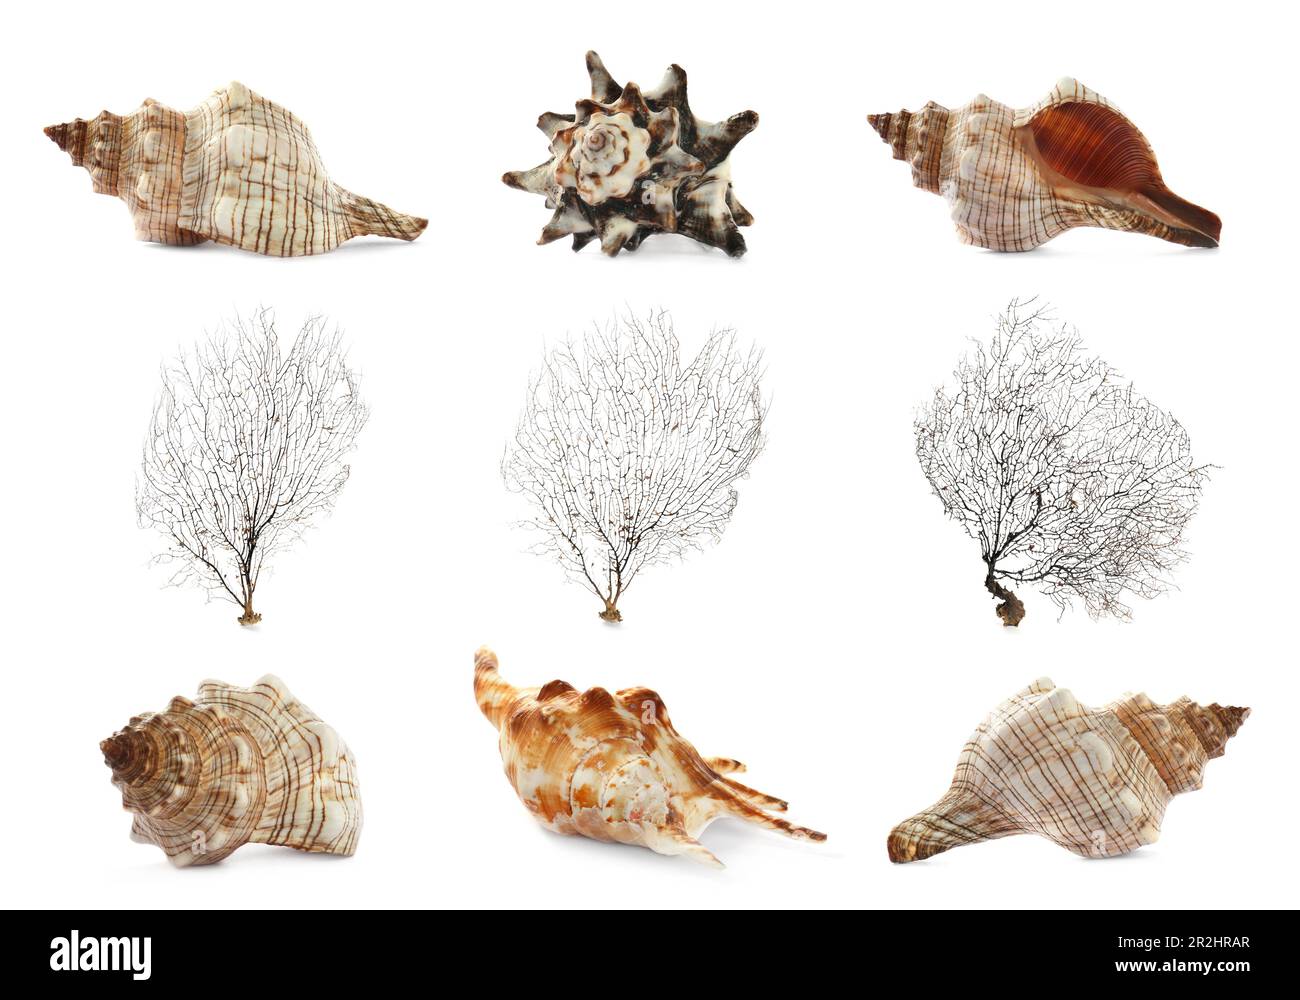 Ensemble de différents coquillages exotiques et coraux ramifiés sur fond blanc Banque D'Images